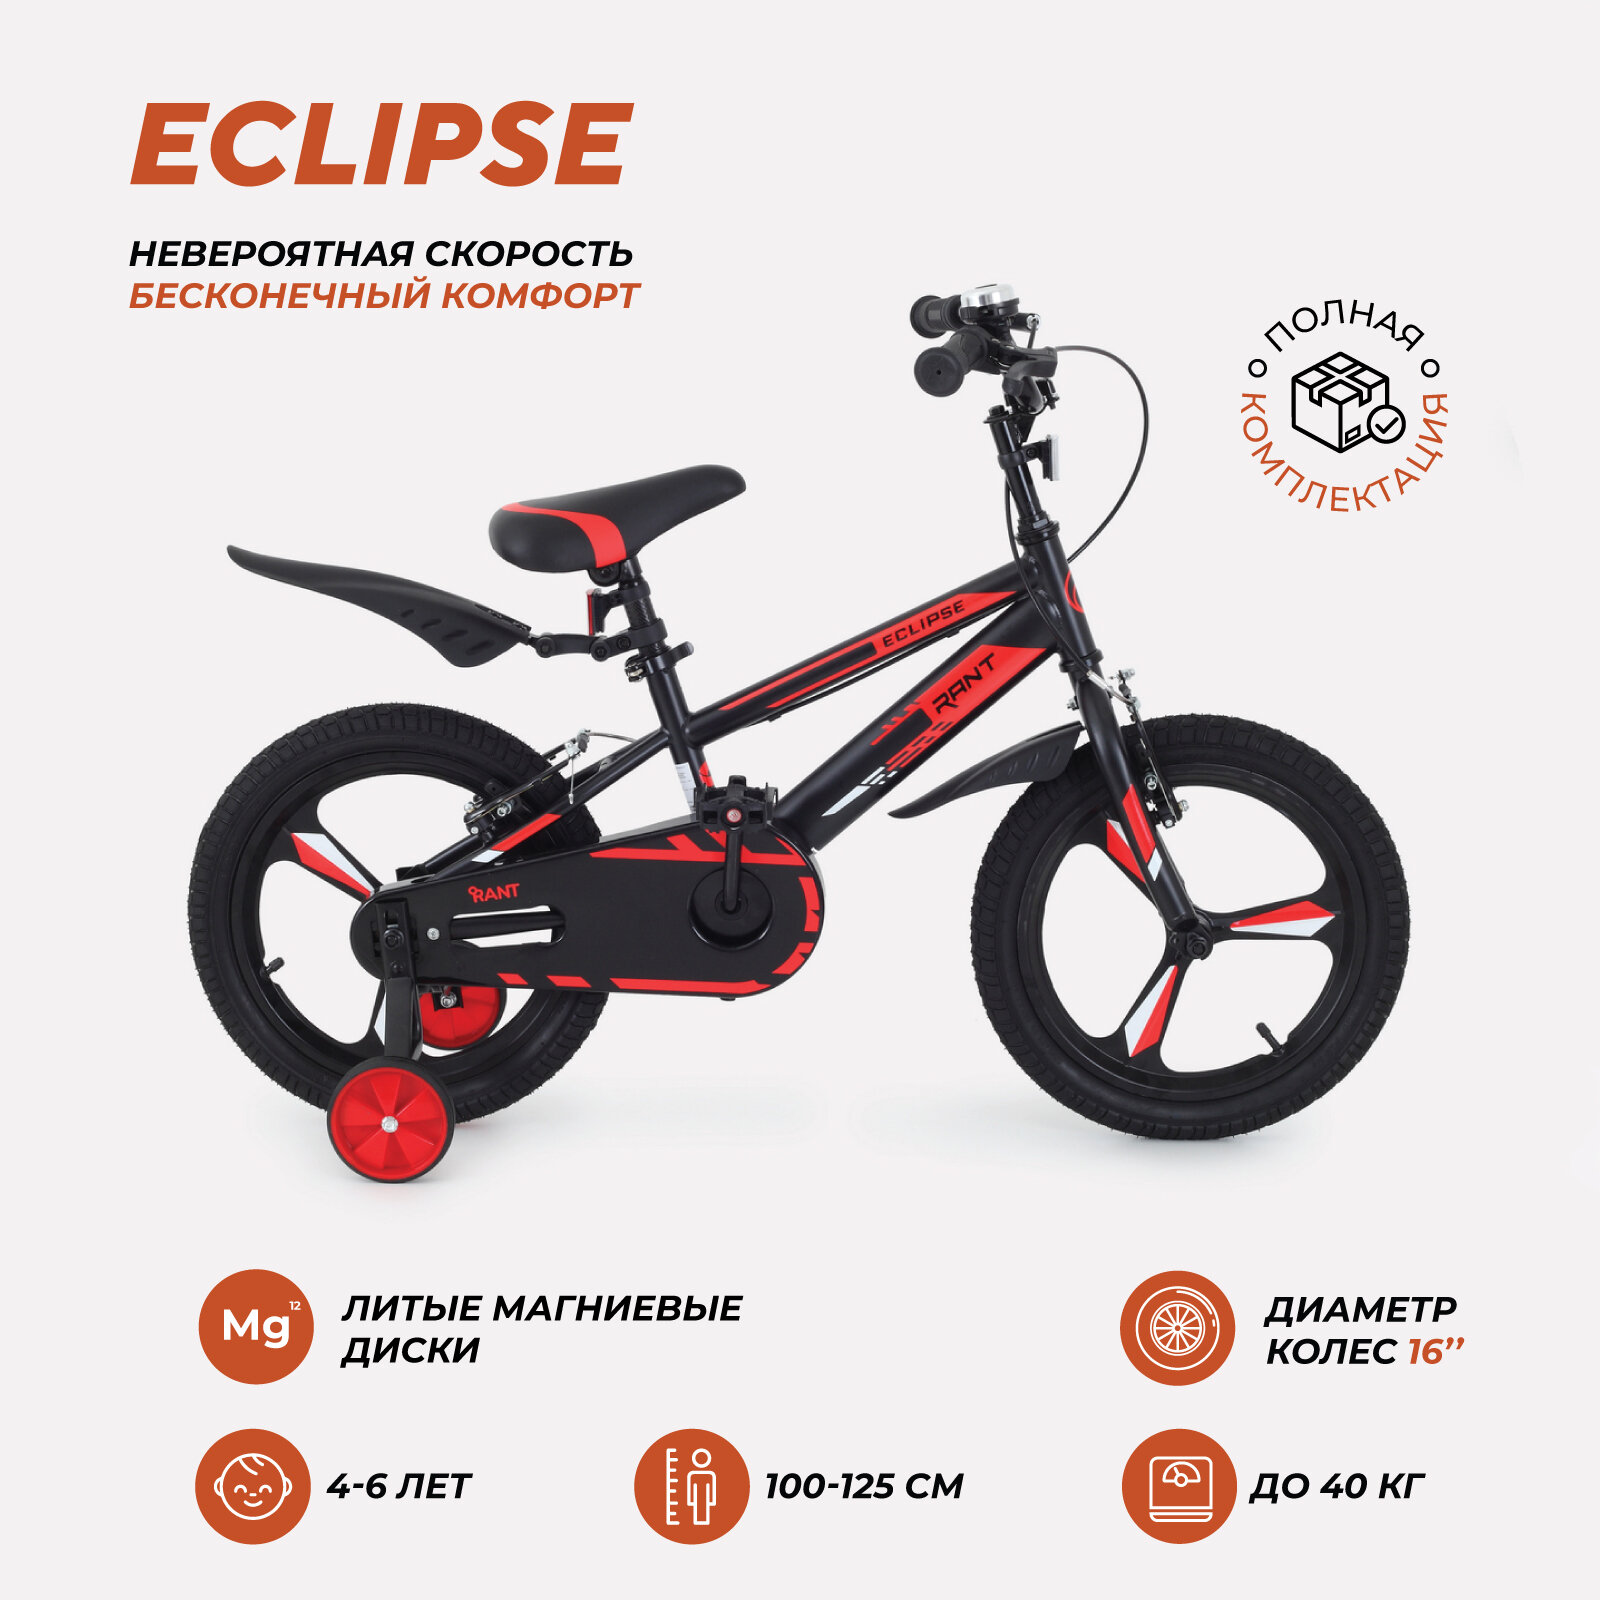 Велосипед двухколесный детский RANT "Eclipse" черно-красный 16"